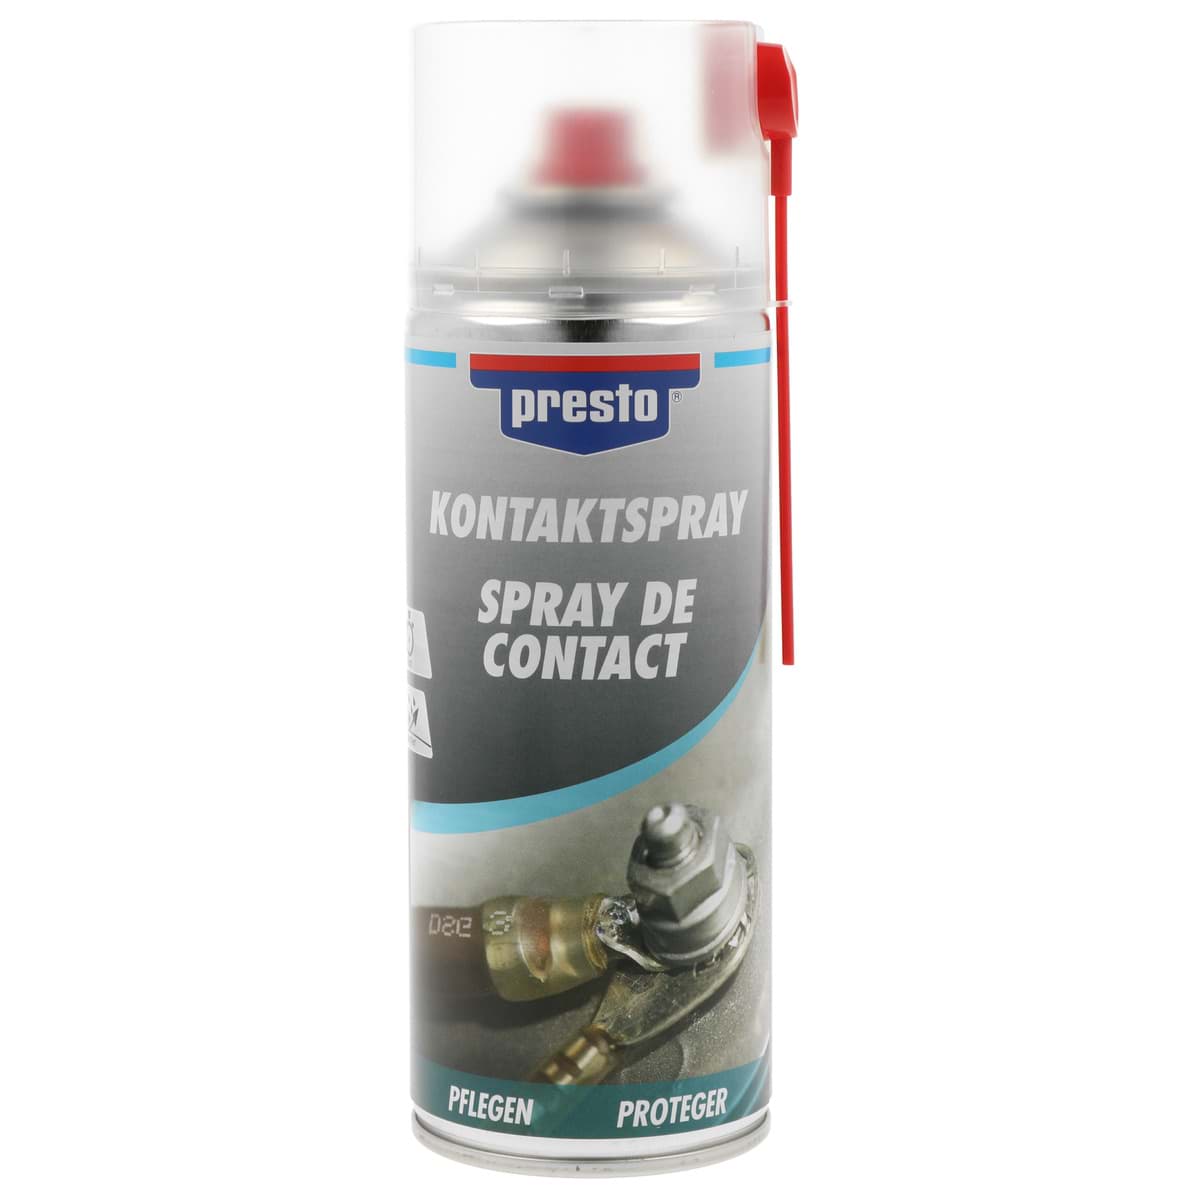 Picture of Presto Kontaktspray Kontakt Elektronik Spray 400ml